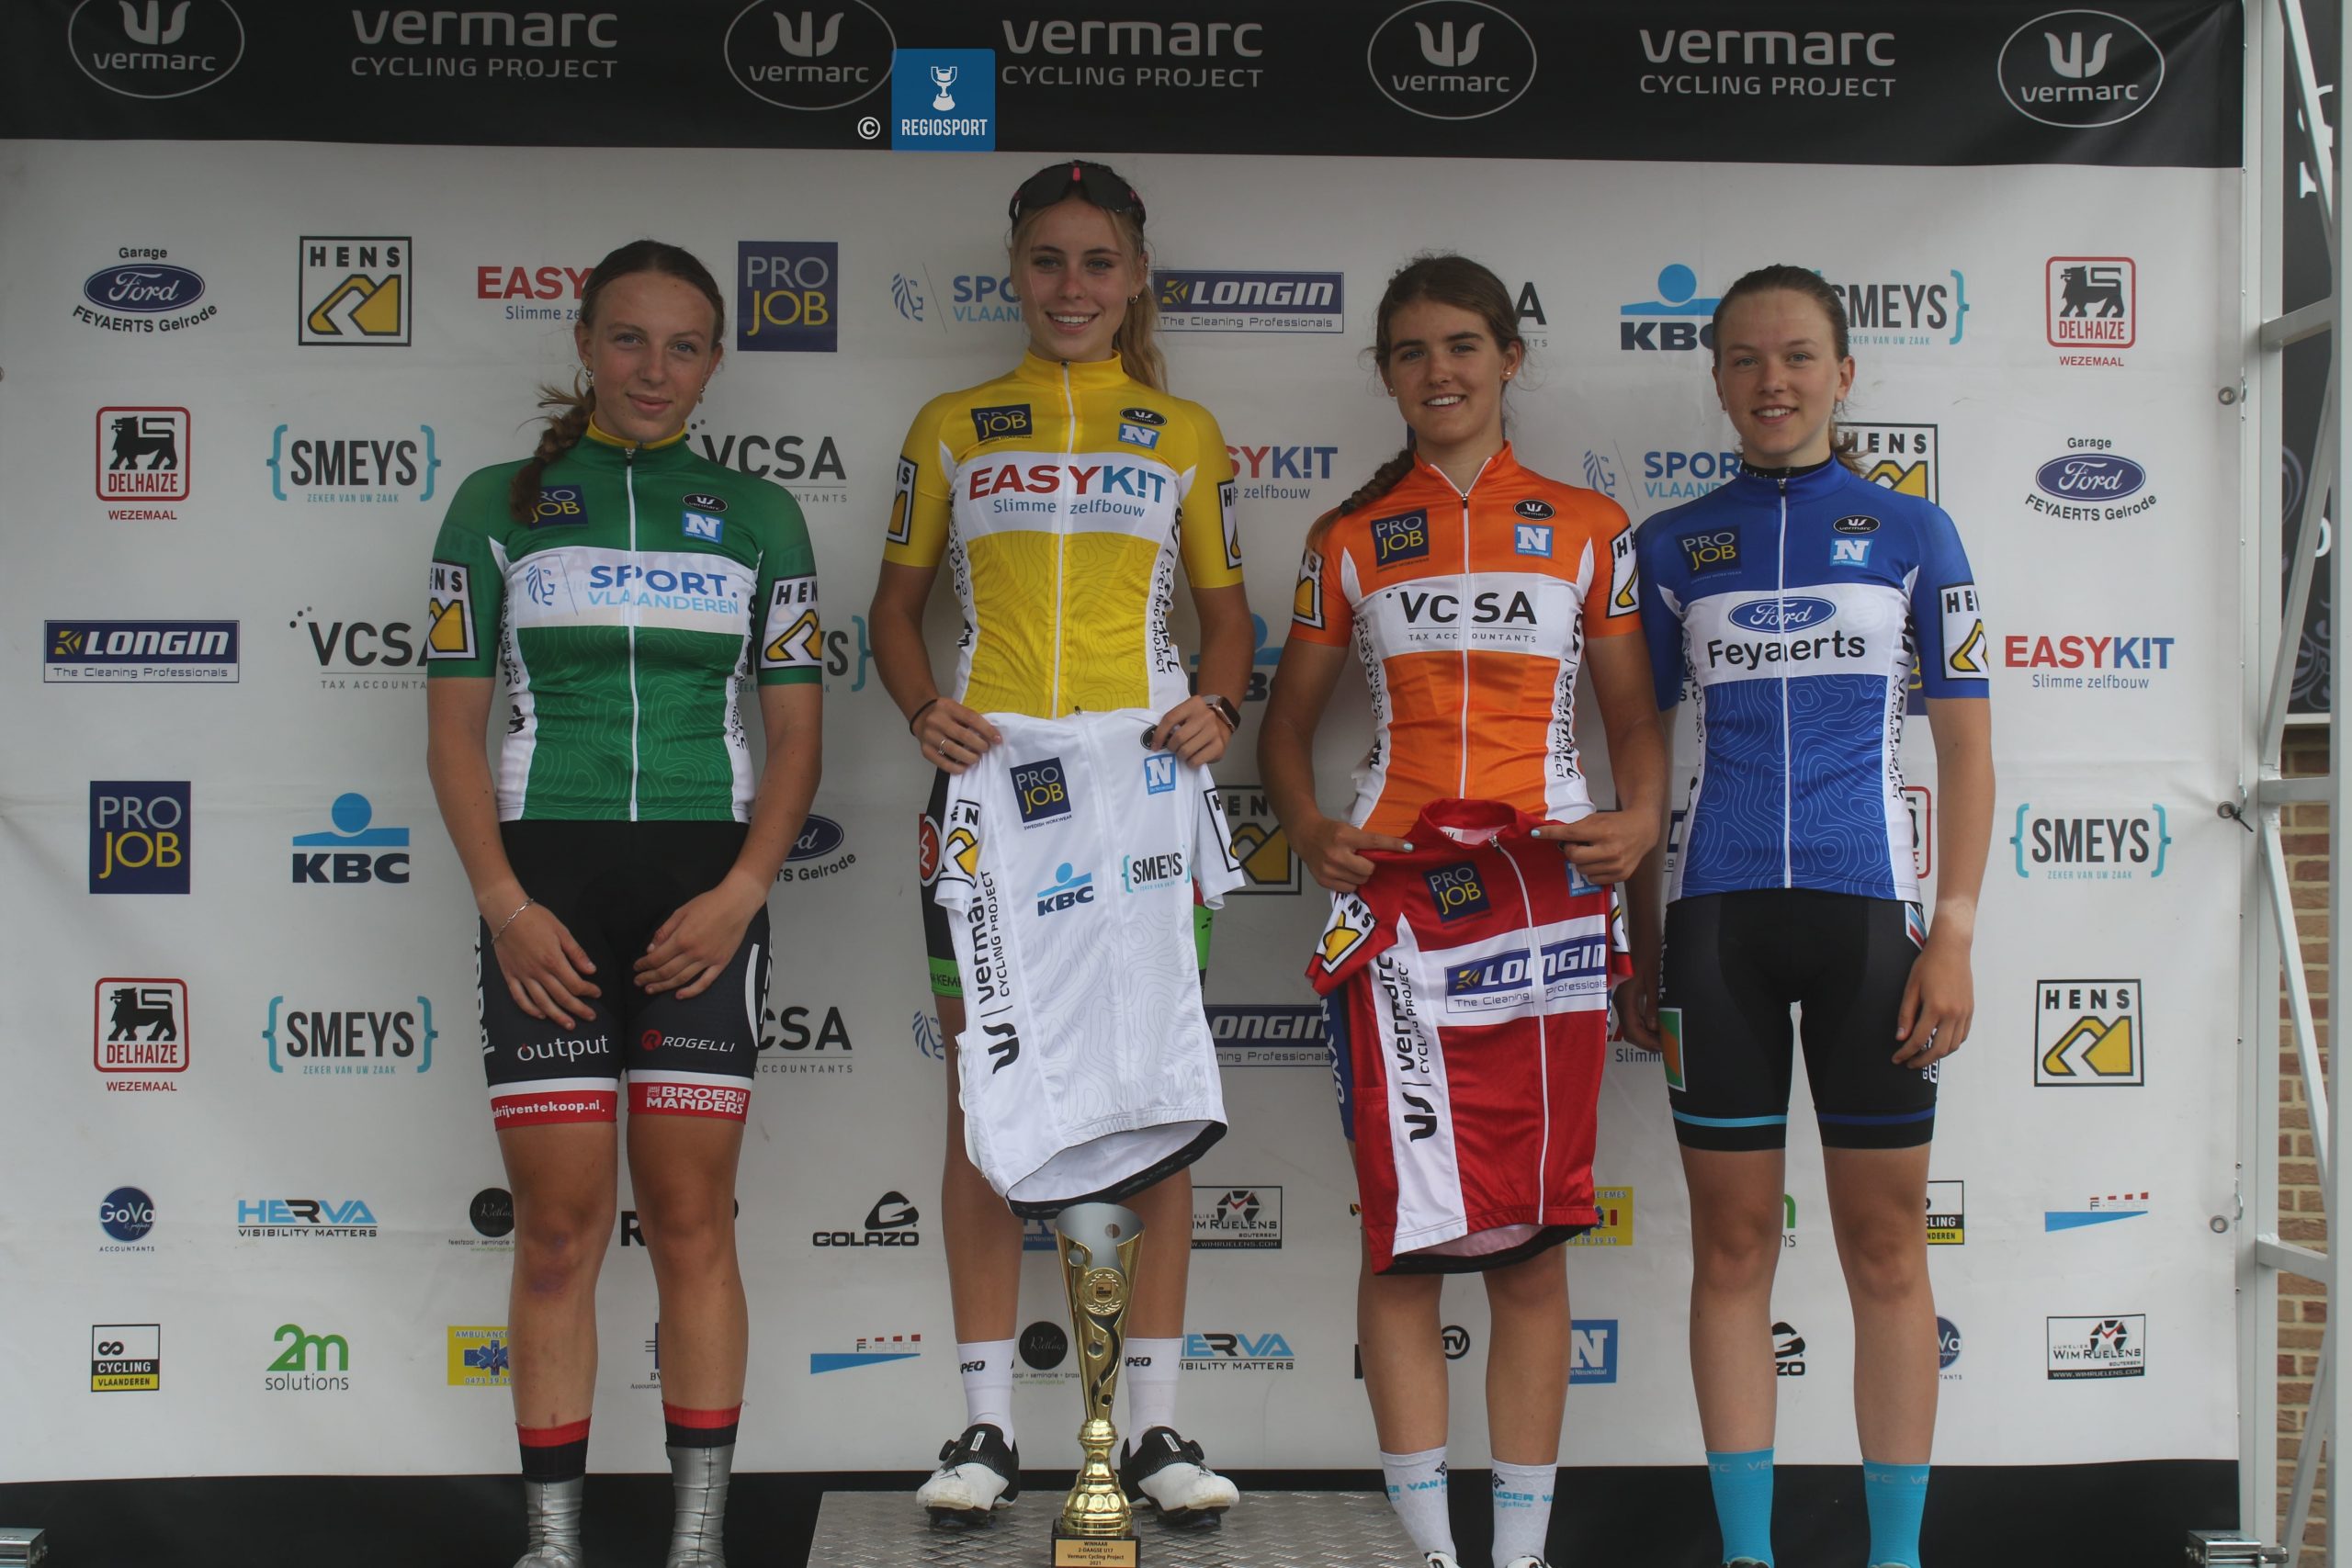 Nieuwelinge Britt Huybrechts wint tot haar eigen verrassing eerste tweedaagse van het Vermarc Cycling Project!